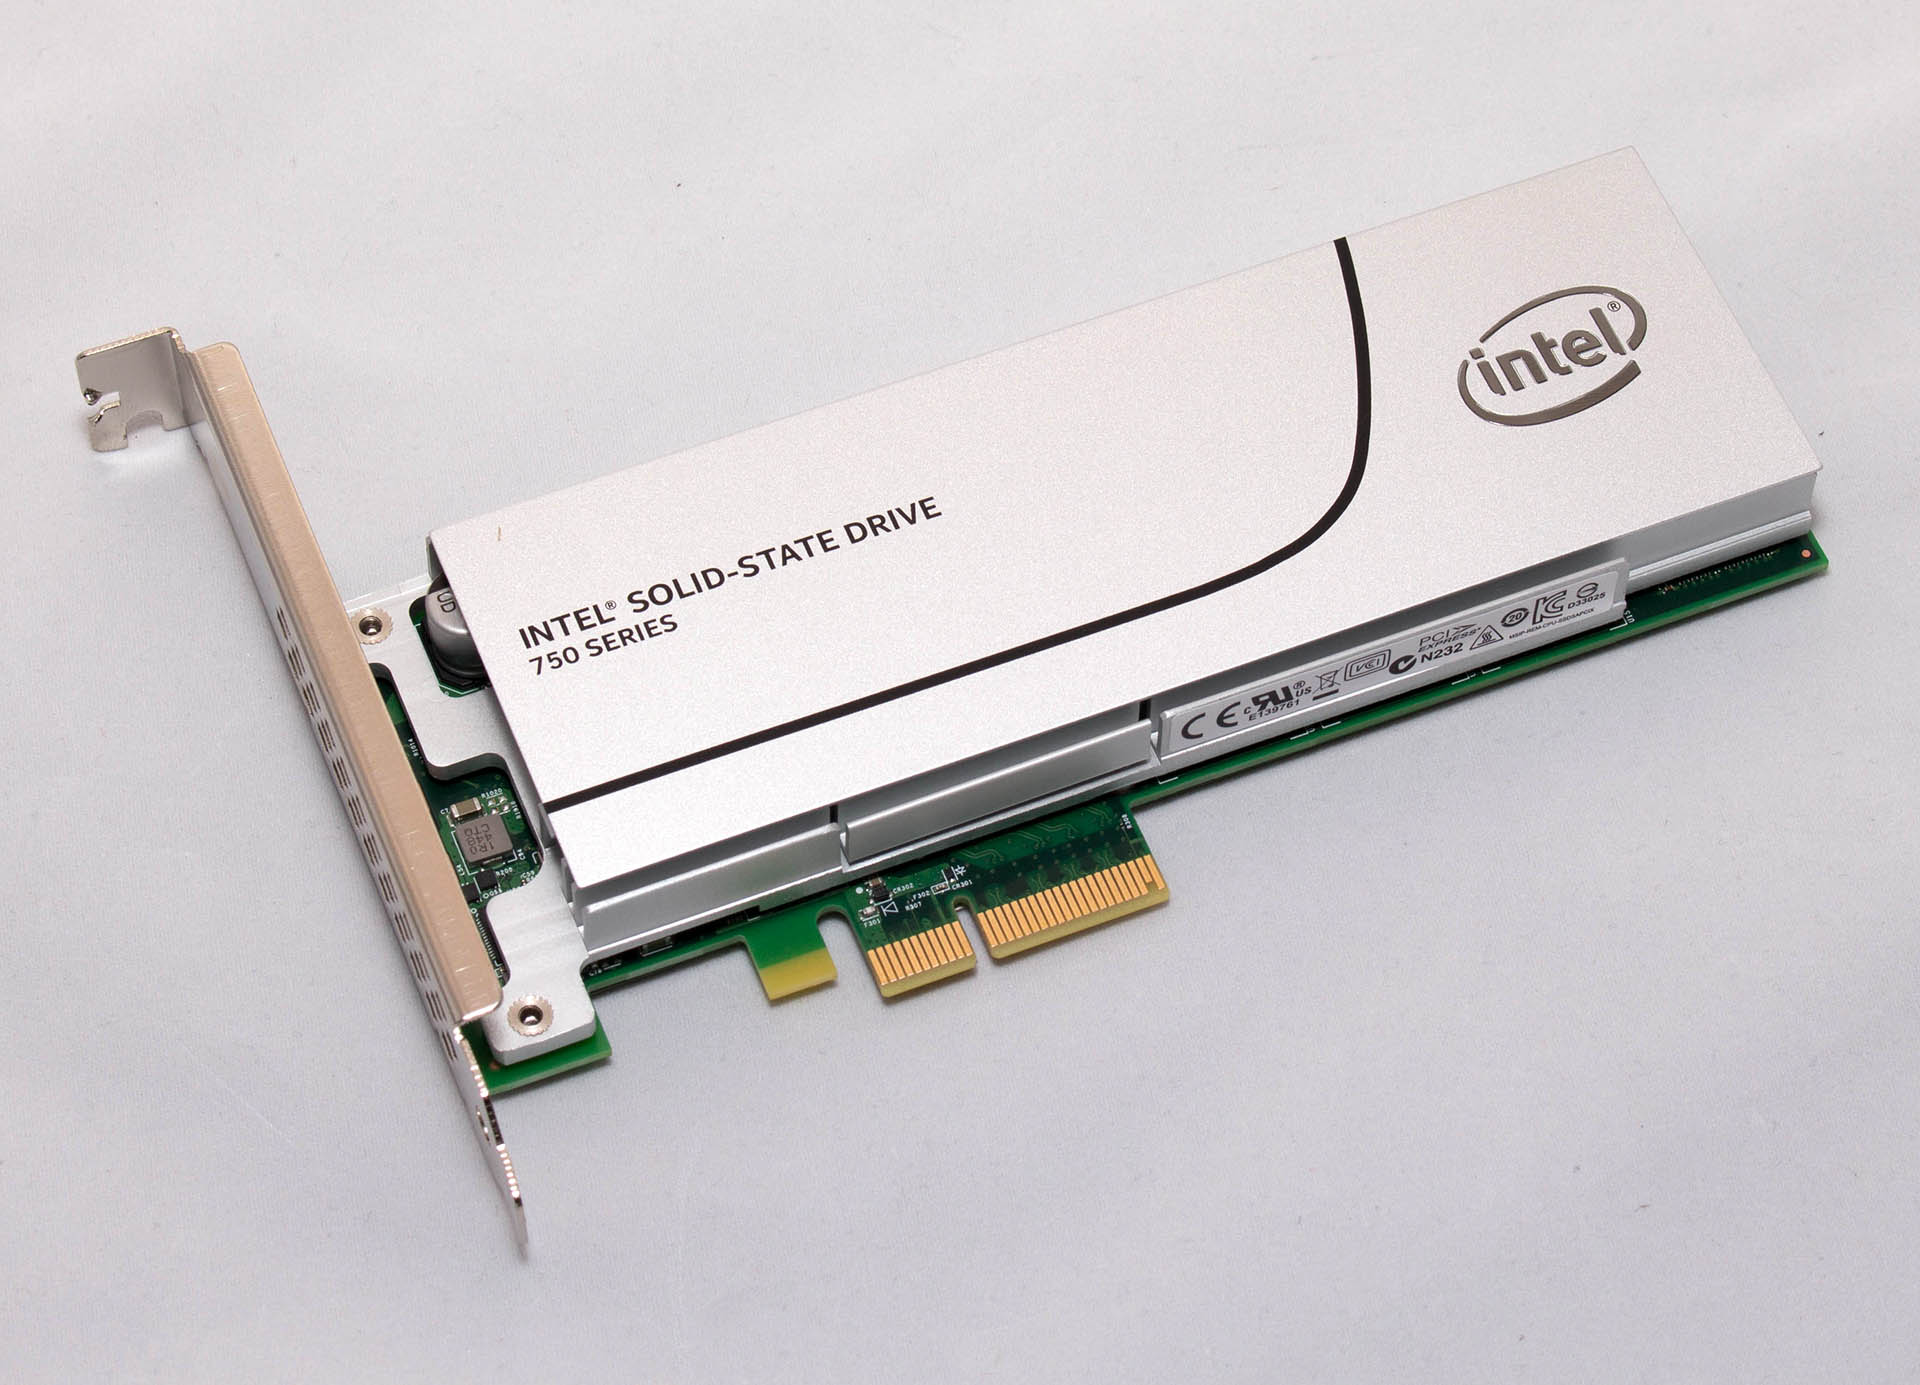 Intel SSD 750 400GB test